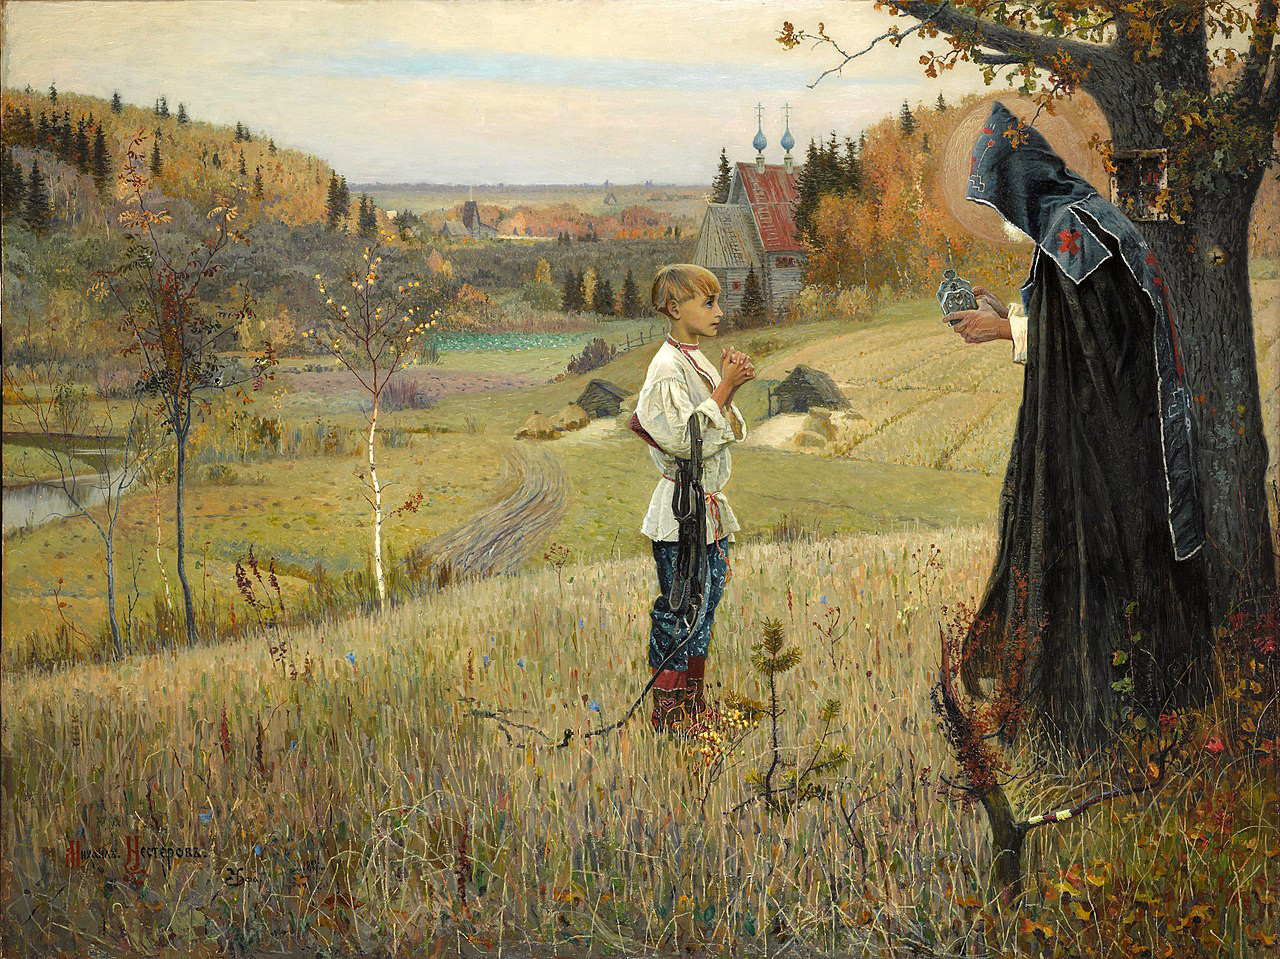 Die Vision von den Junge Bartholomäus von Michail Nesterow, 1890